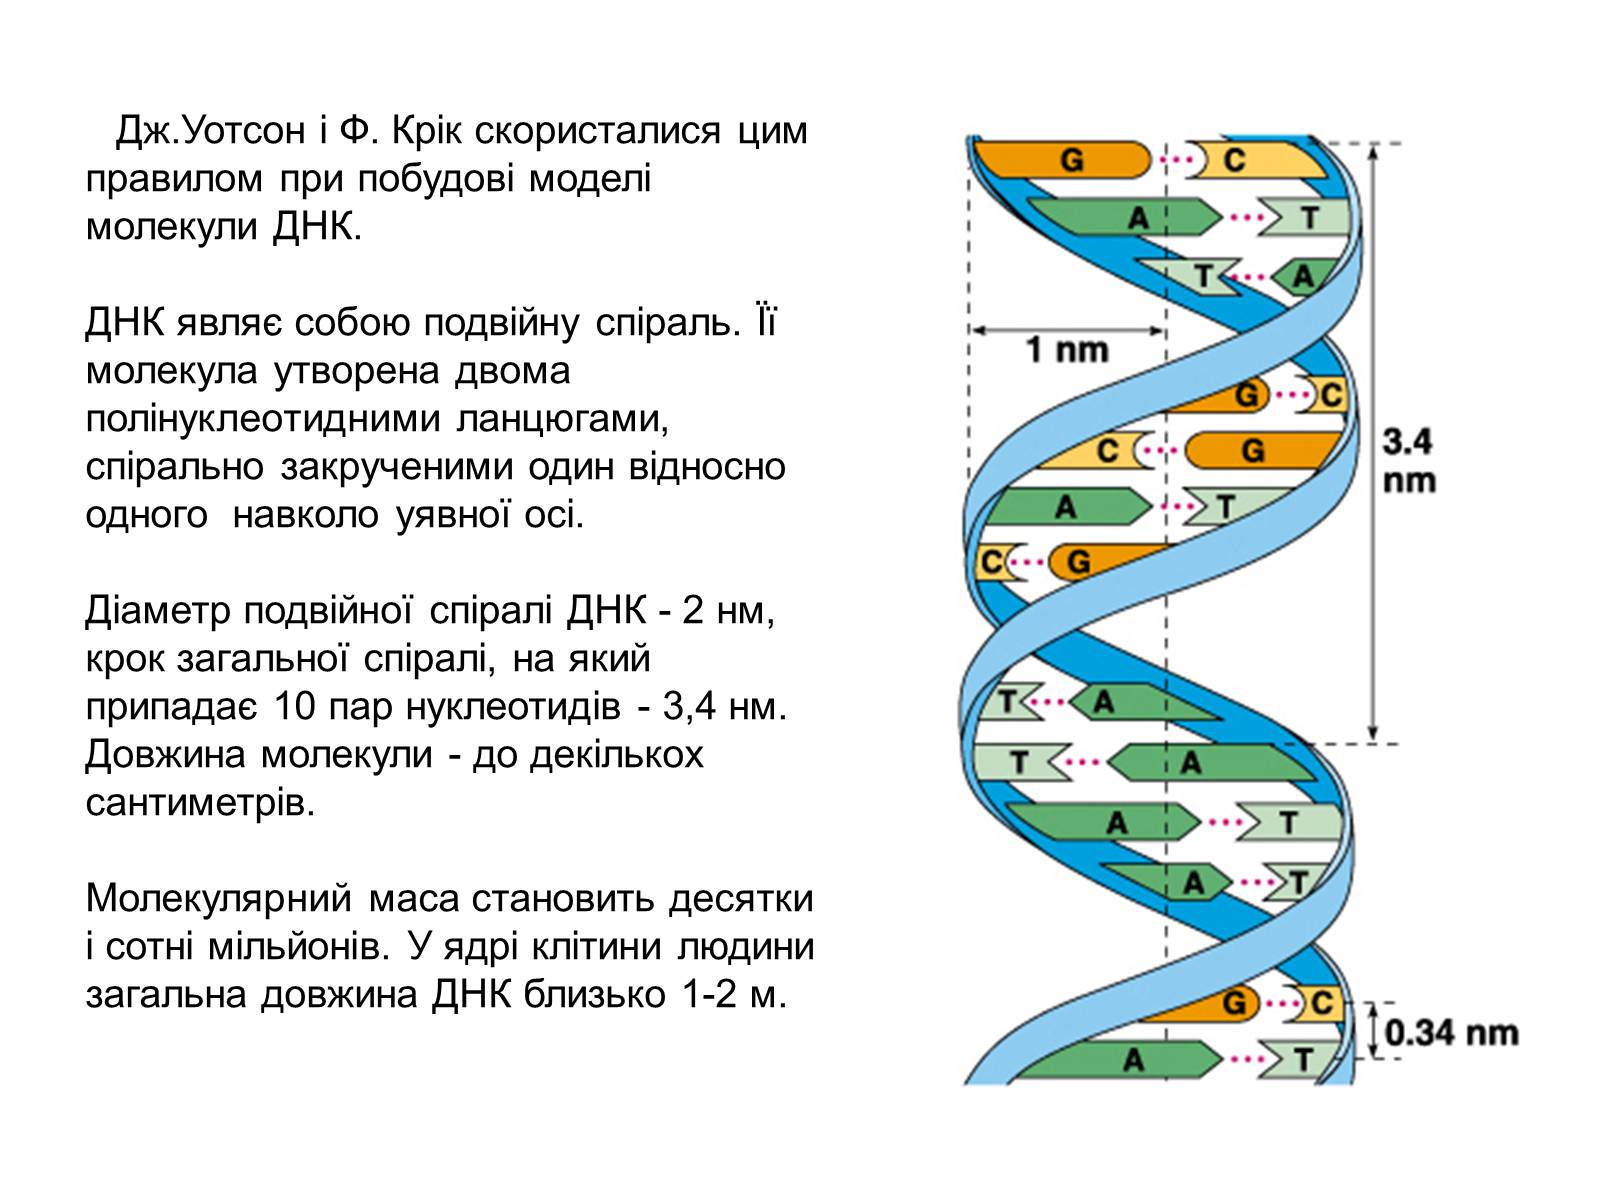 Одно из составляющих днк. Модель двойной спирали молекулы ДНК. Охарактеризуйте структуру ДНК. Параметры двойной спирали ДНК. Краткая характеристика ДНК.